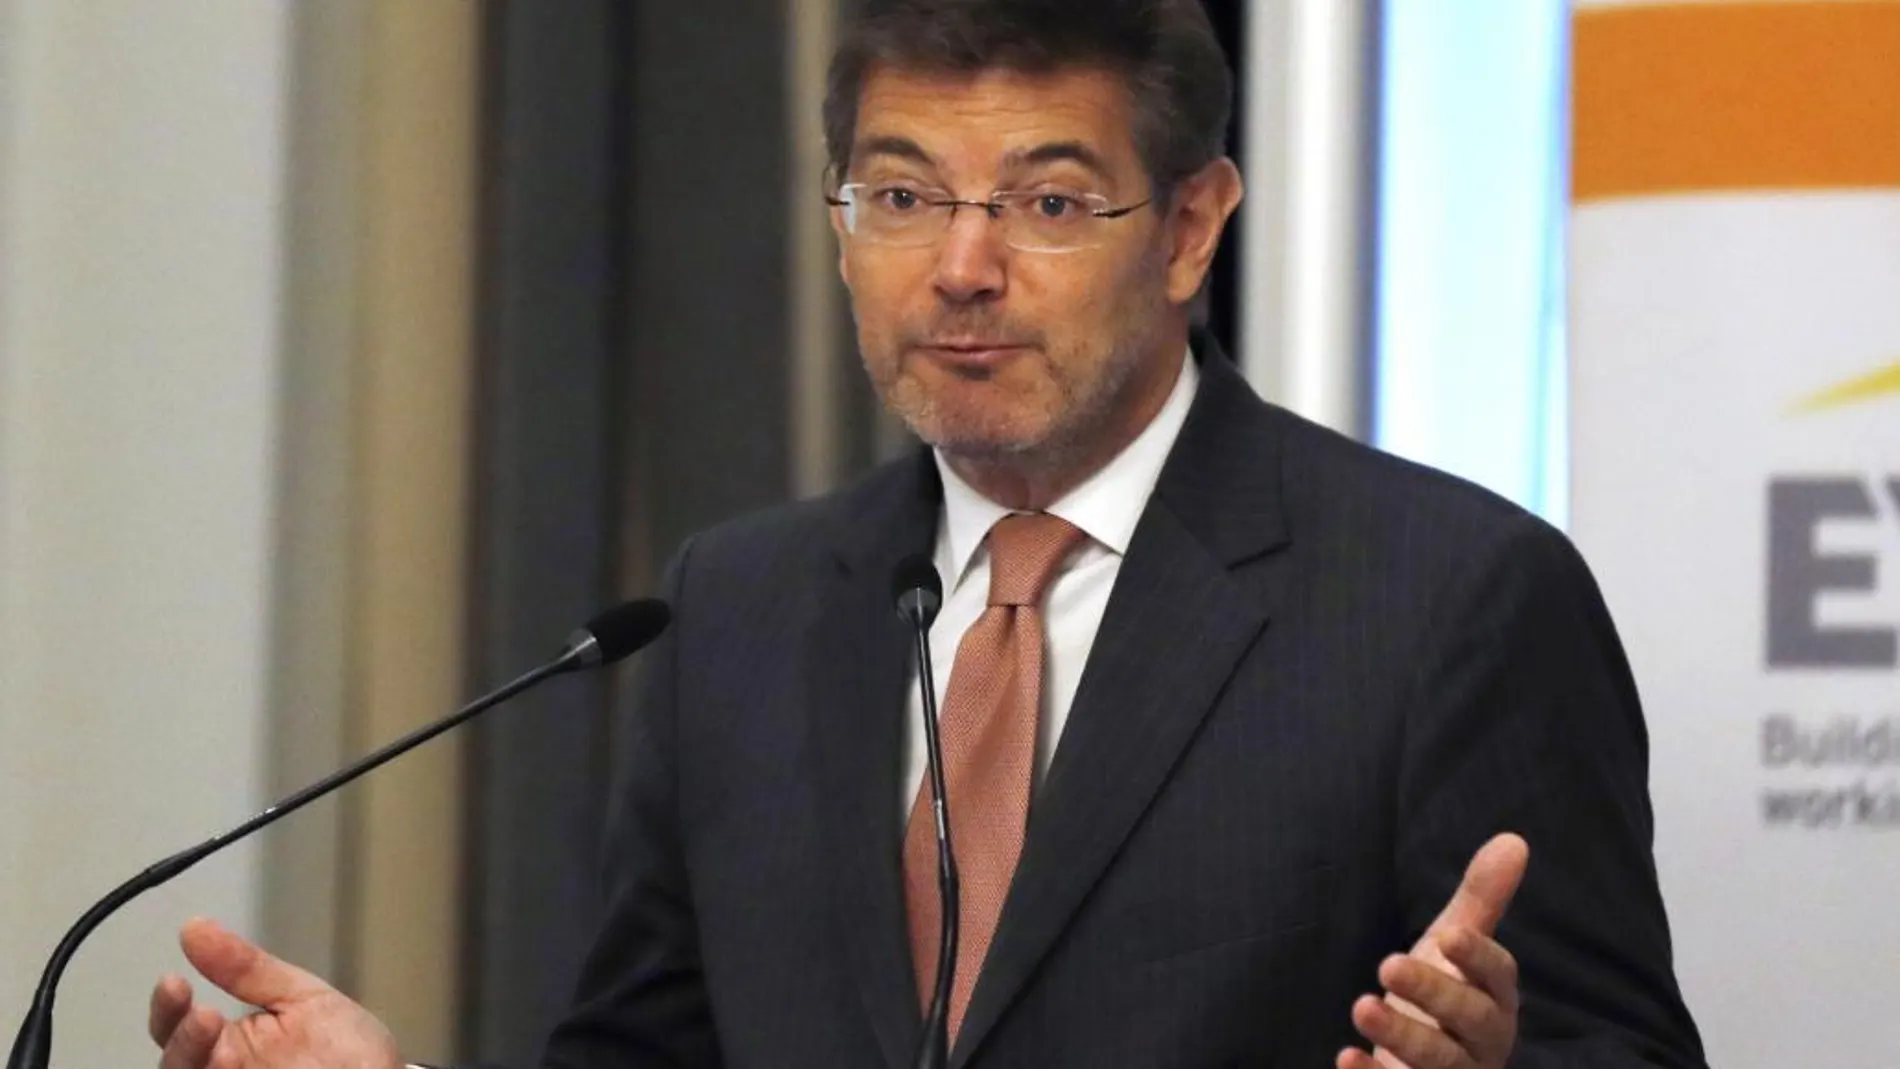 El Ministro de Justicia, Rafael Catalá, durante su intervención en un desayuno informativo celebrado hoy en un hotel de Madrid organizado por El Economista